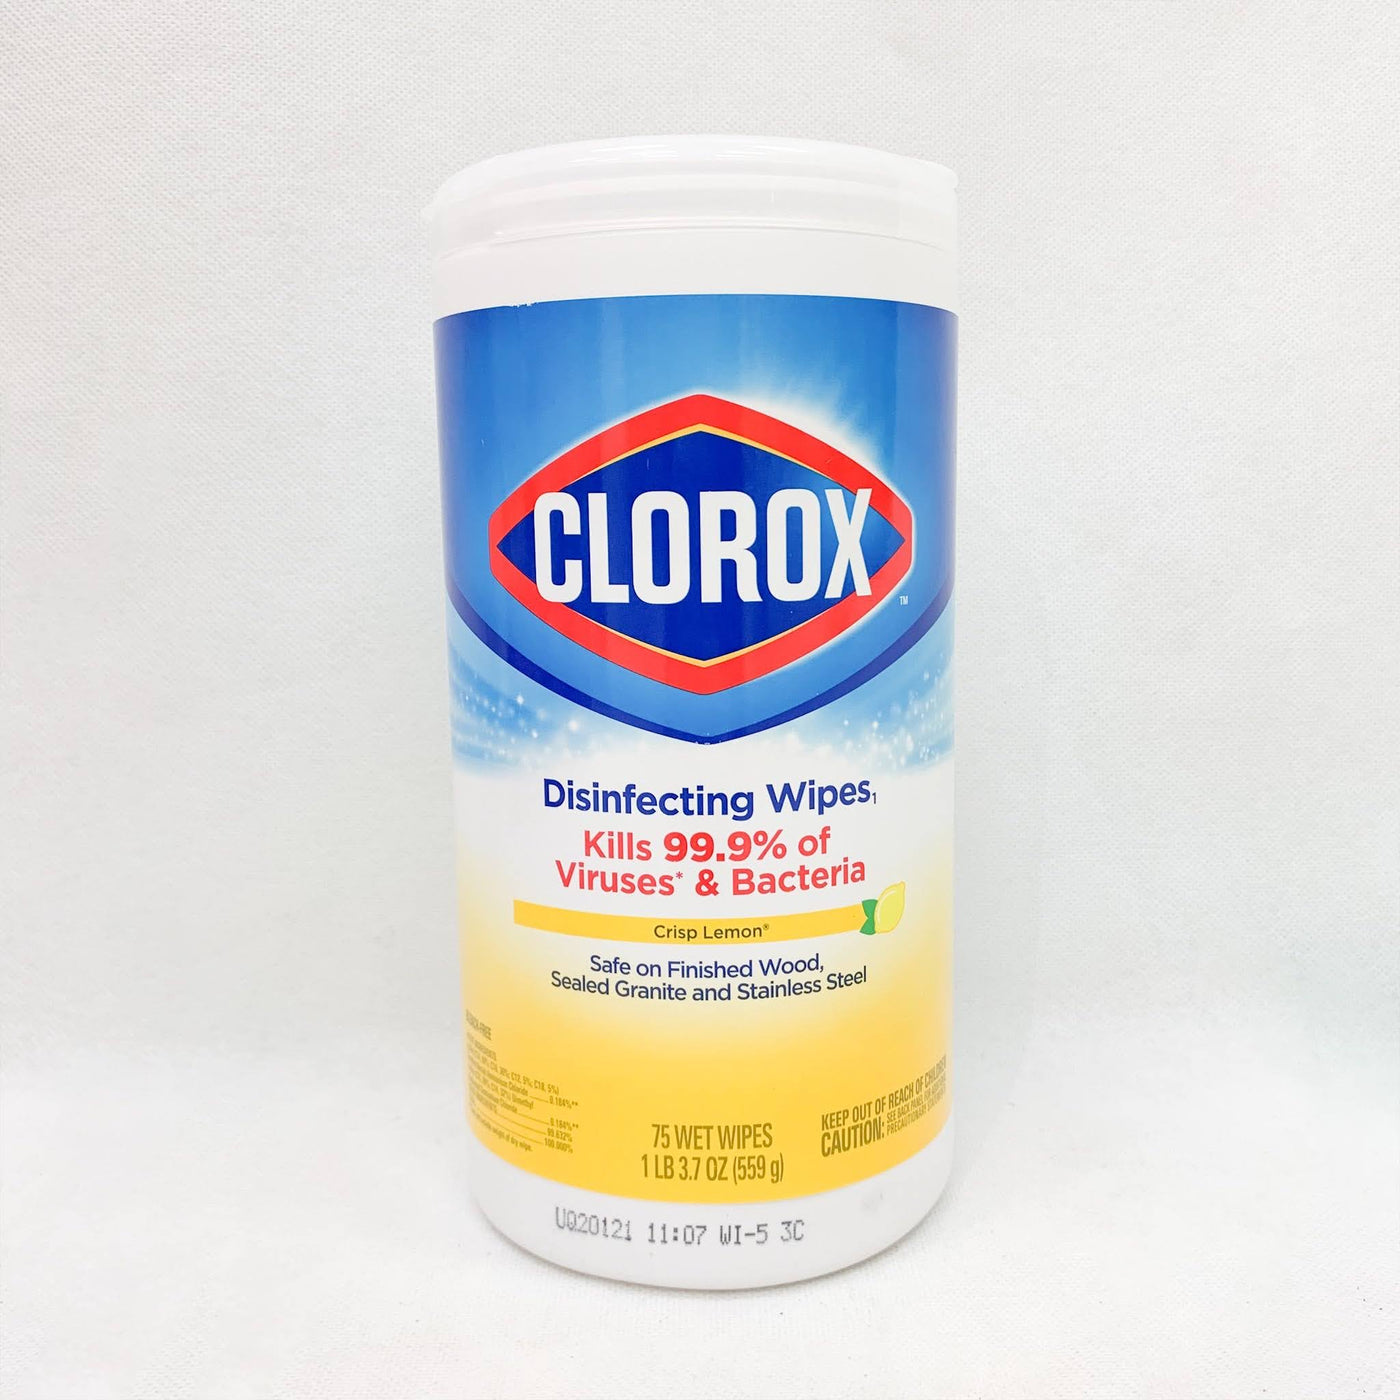 Lingettes désinfectantes Clorox - parfum citron